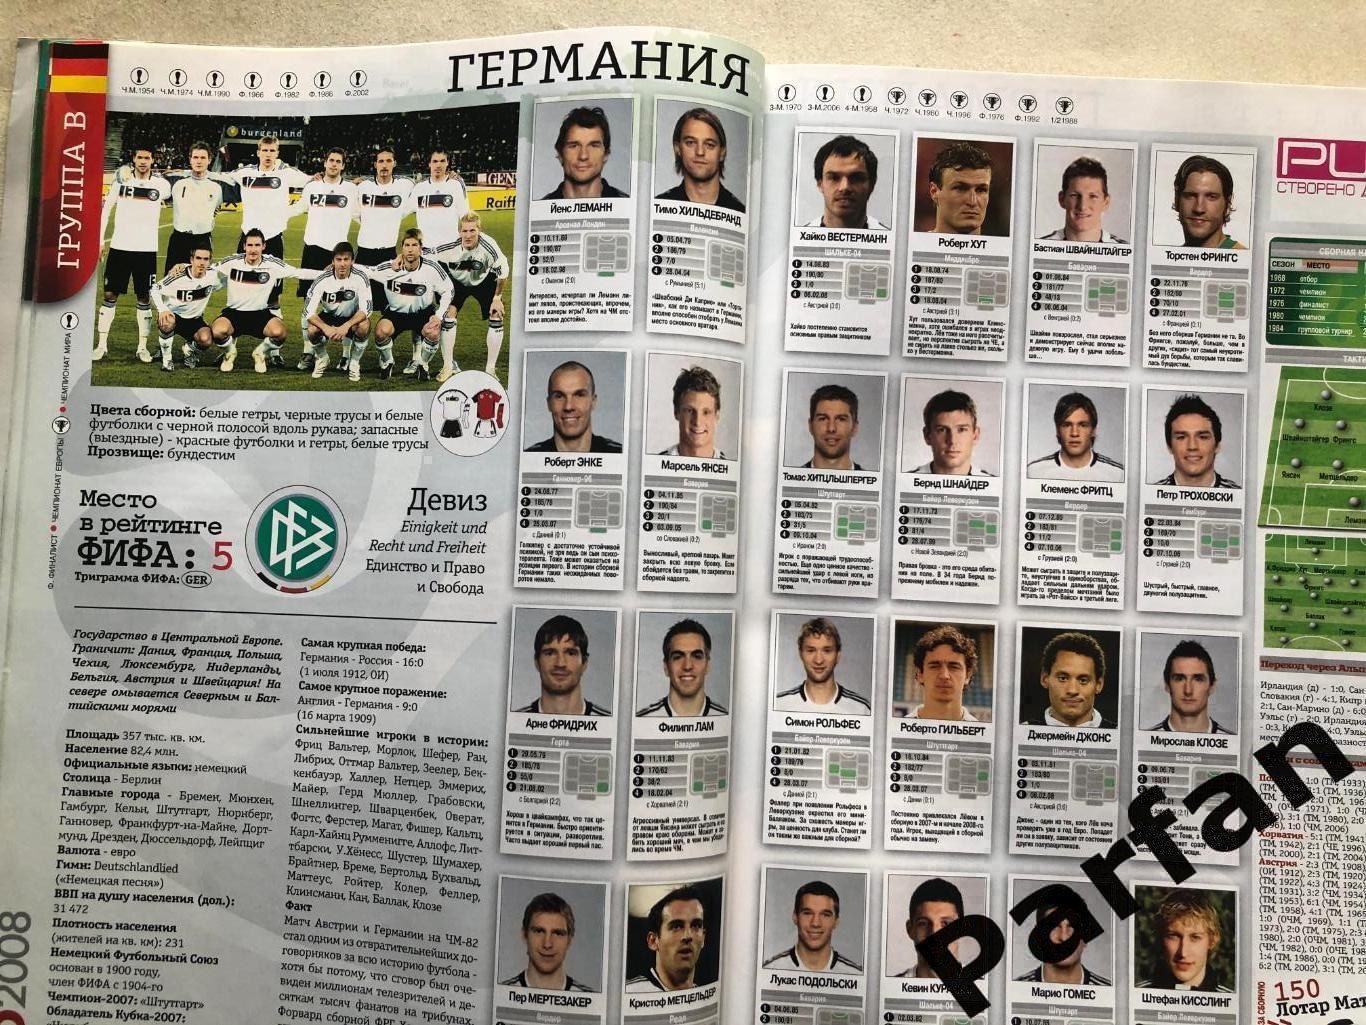 Журнал Футбол Україна Чемпіонат Європи 2008 Спецвипуск 2